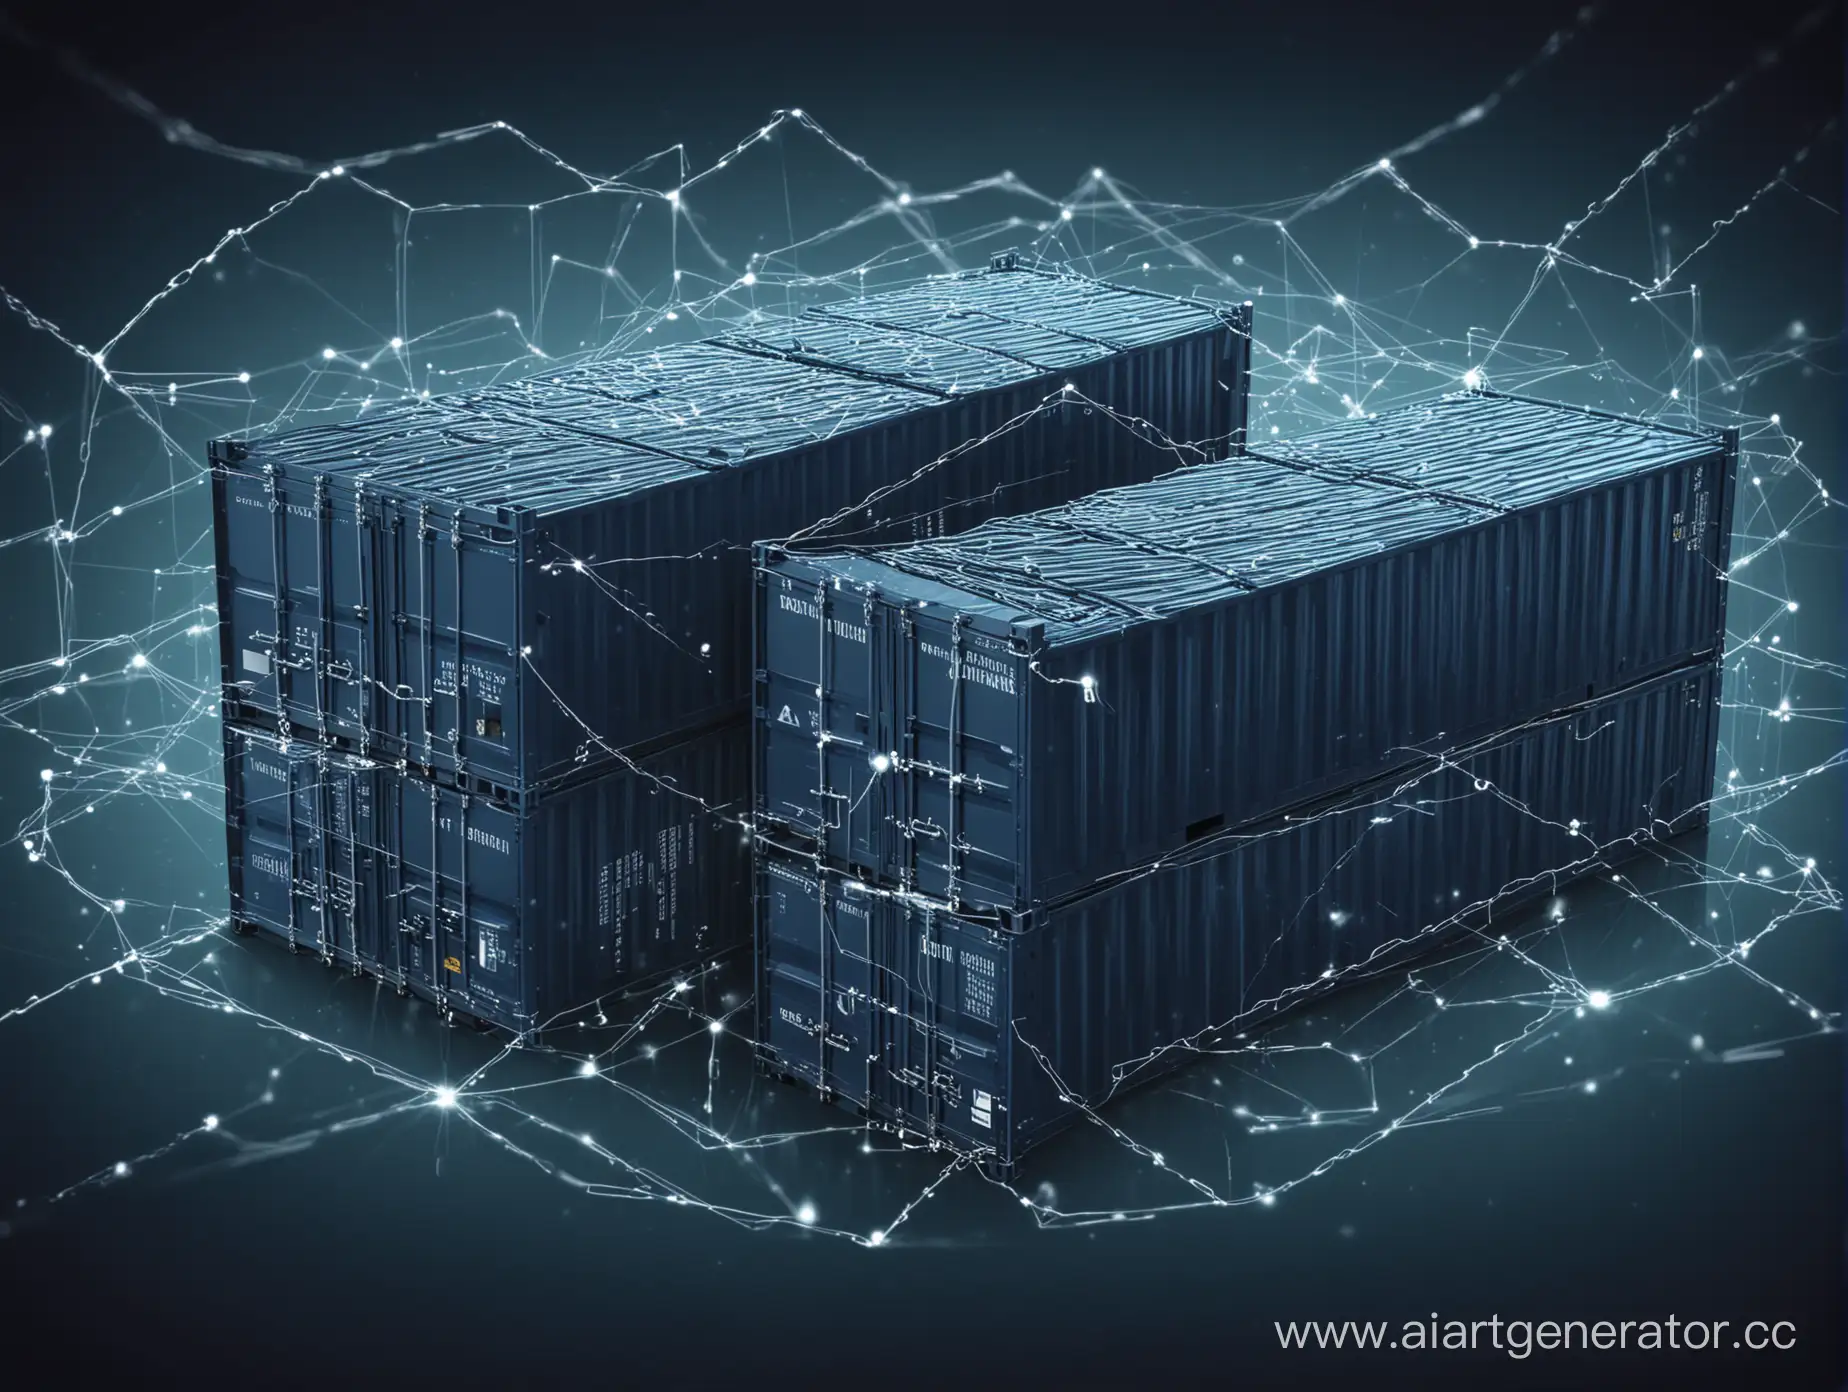 абстрактное изображение с контейнерами и связями на темно-синем фоне